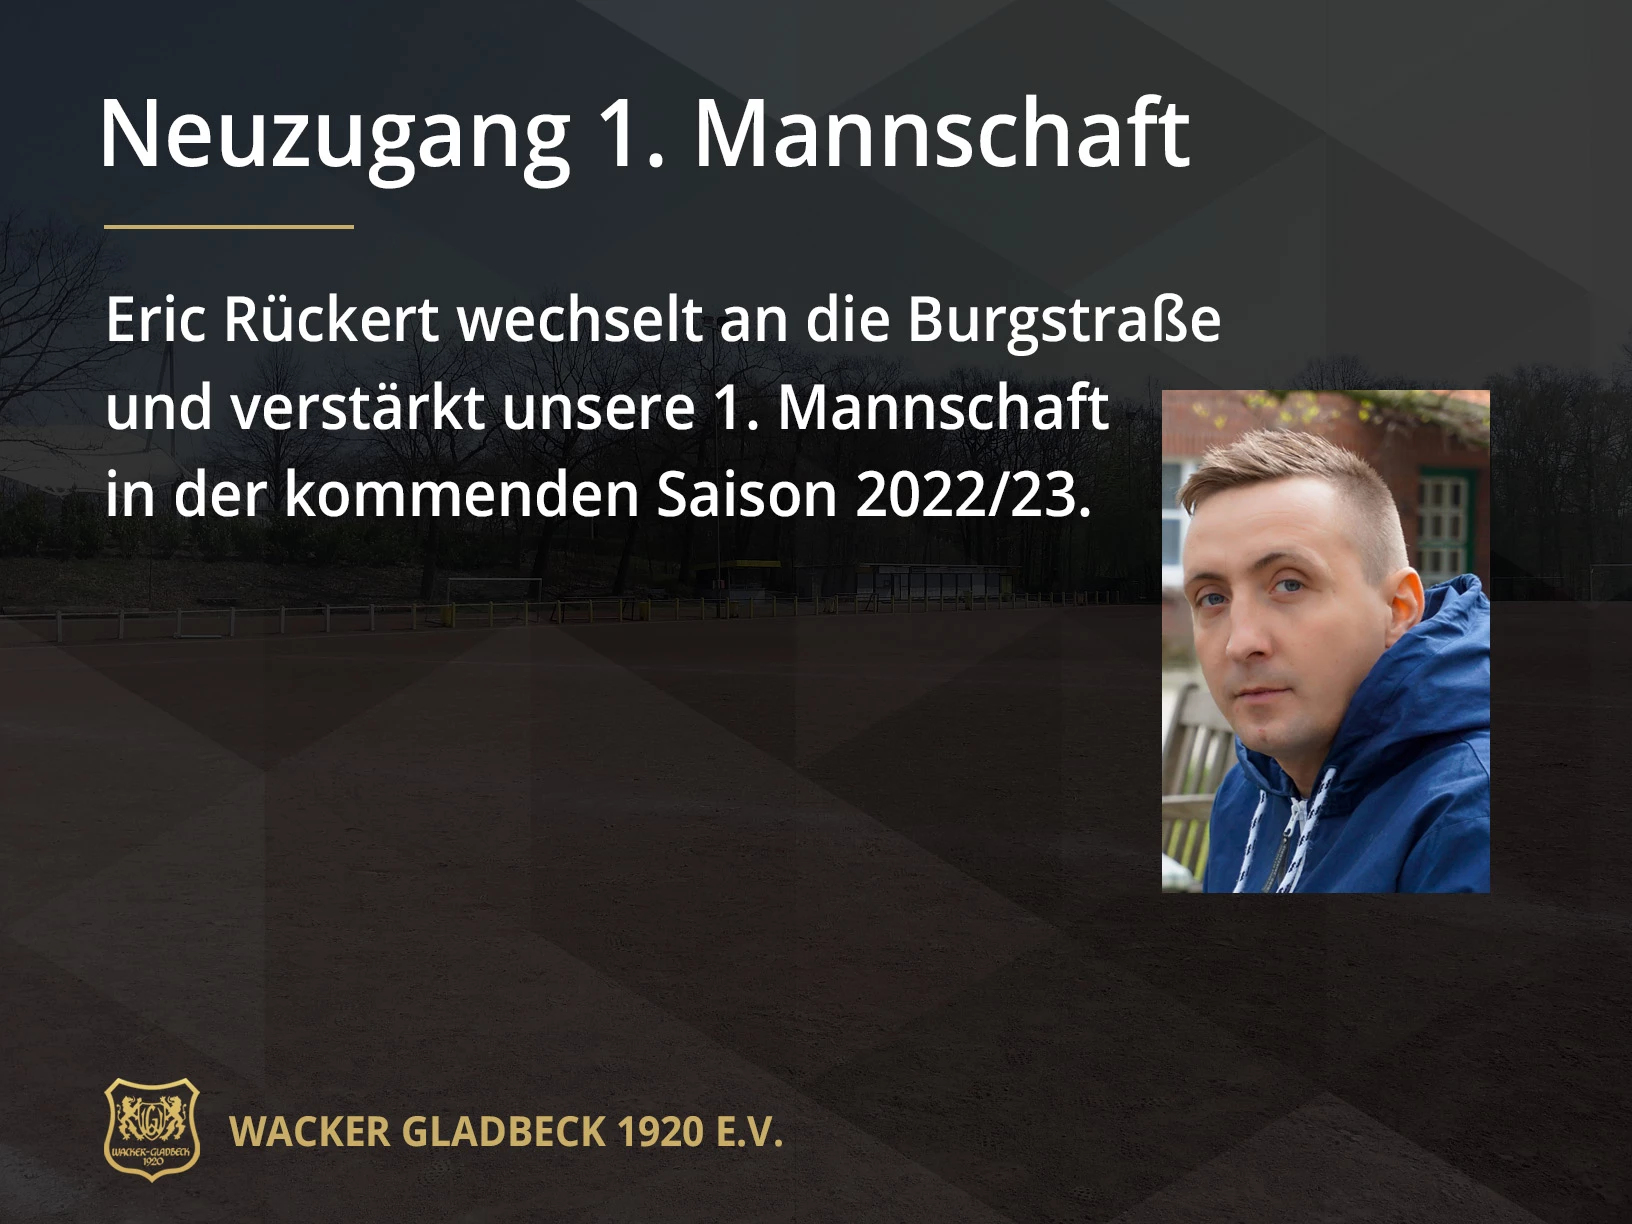 Wacker Gladbeck - Eric Rückert